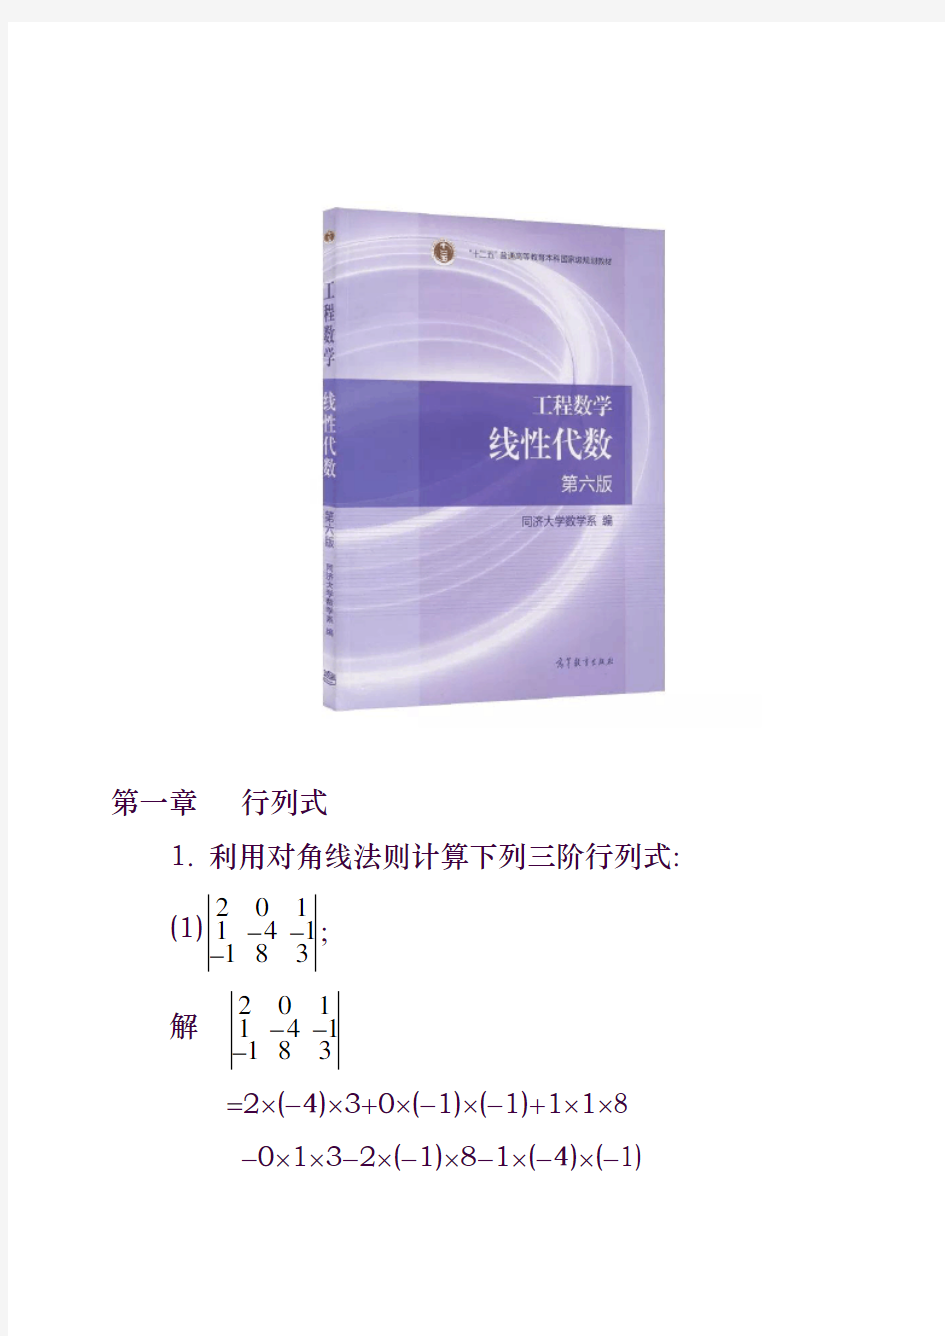 工程数学线性代数(同济大学第六版)课后习题答案(全)